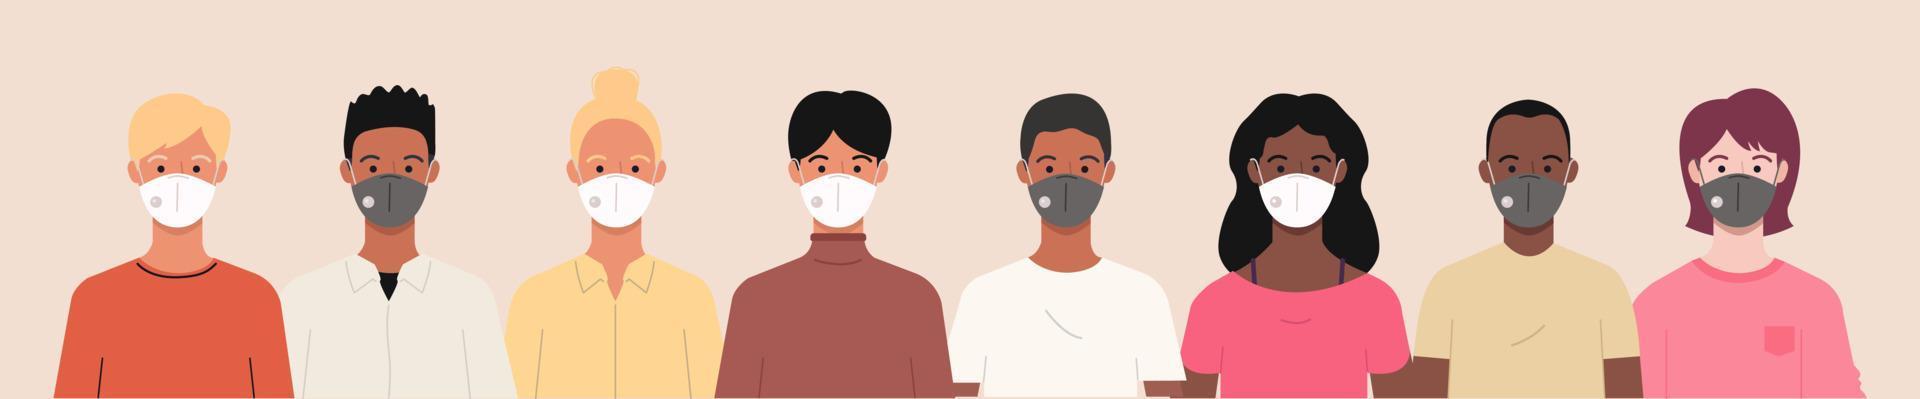 grupo de pessoas usando máscaras médicas para prevenir coronavírus, doença covid-19, gripe, poluição do ar, ar contaminado e poluição mundial. ilustração de banner vetorial em um estilo simples vetor